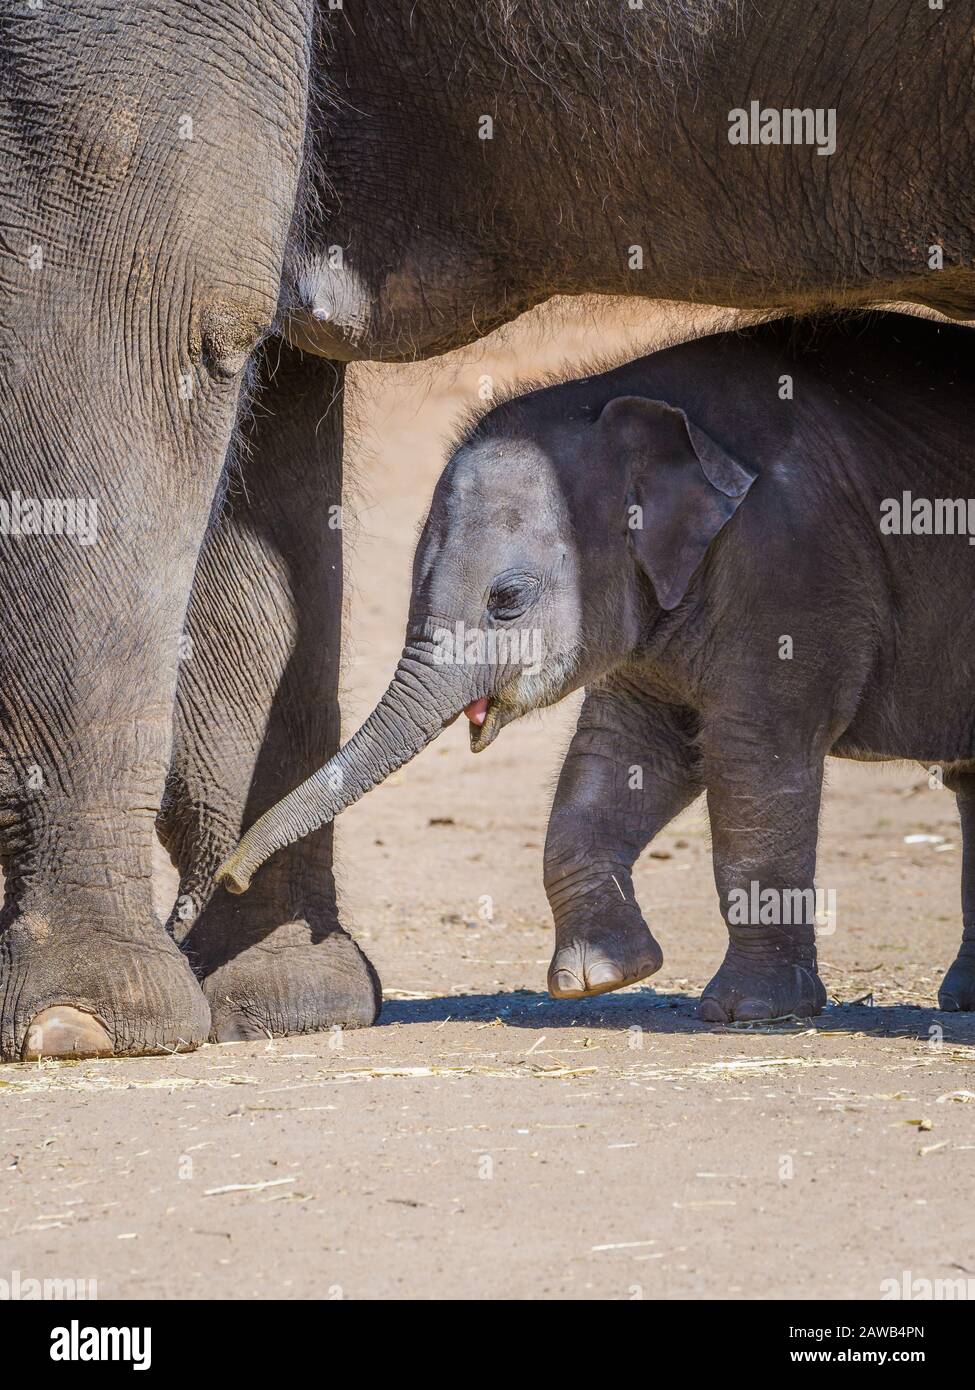 Pantorrilla de elefante asiático recién nacido que busca protección y comodidad entre las piernas de su madre en el zoológico Western Plains de Dubbo en Australia. Foto de stock